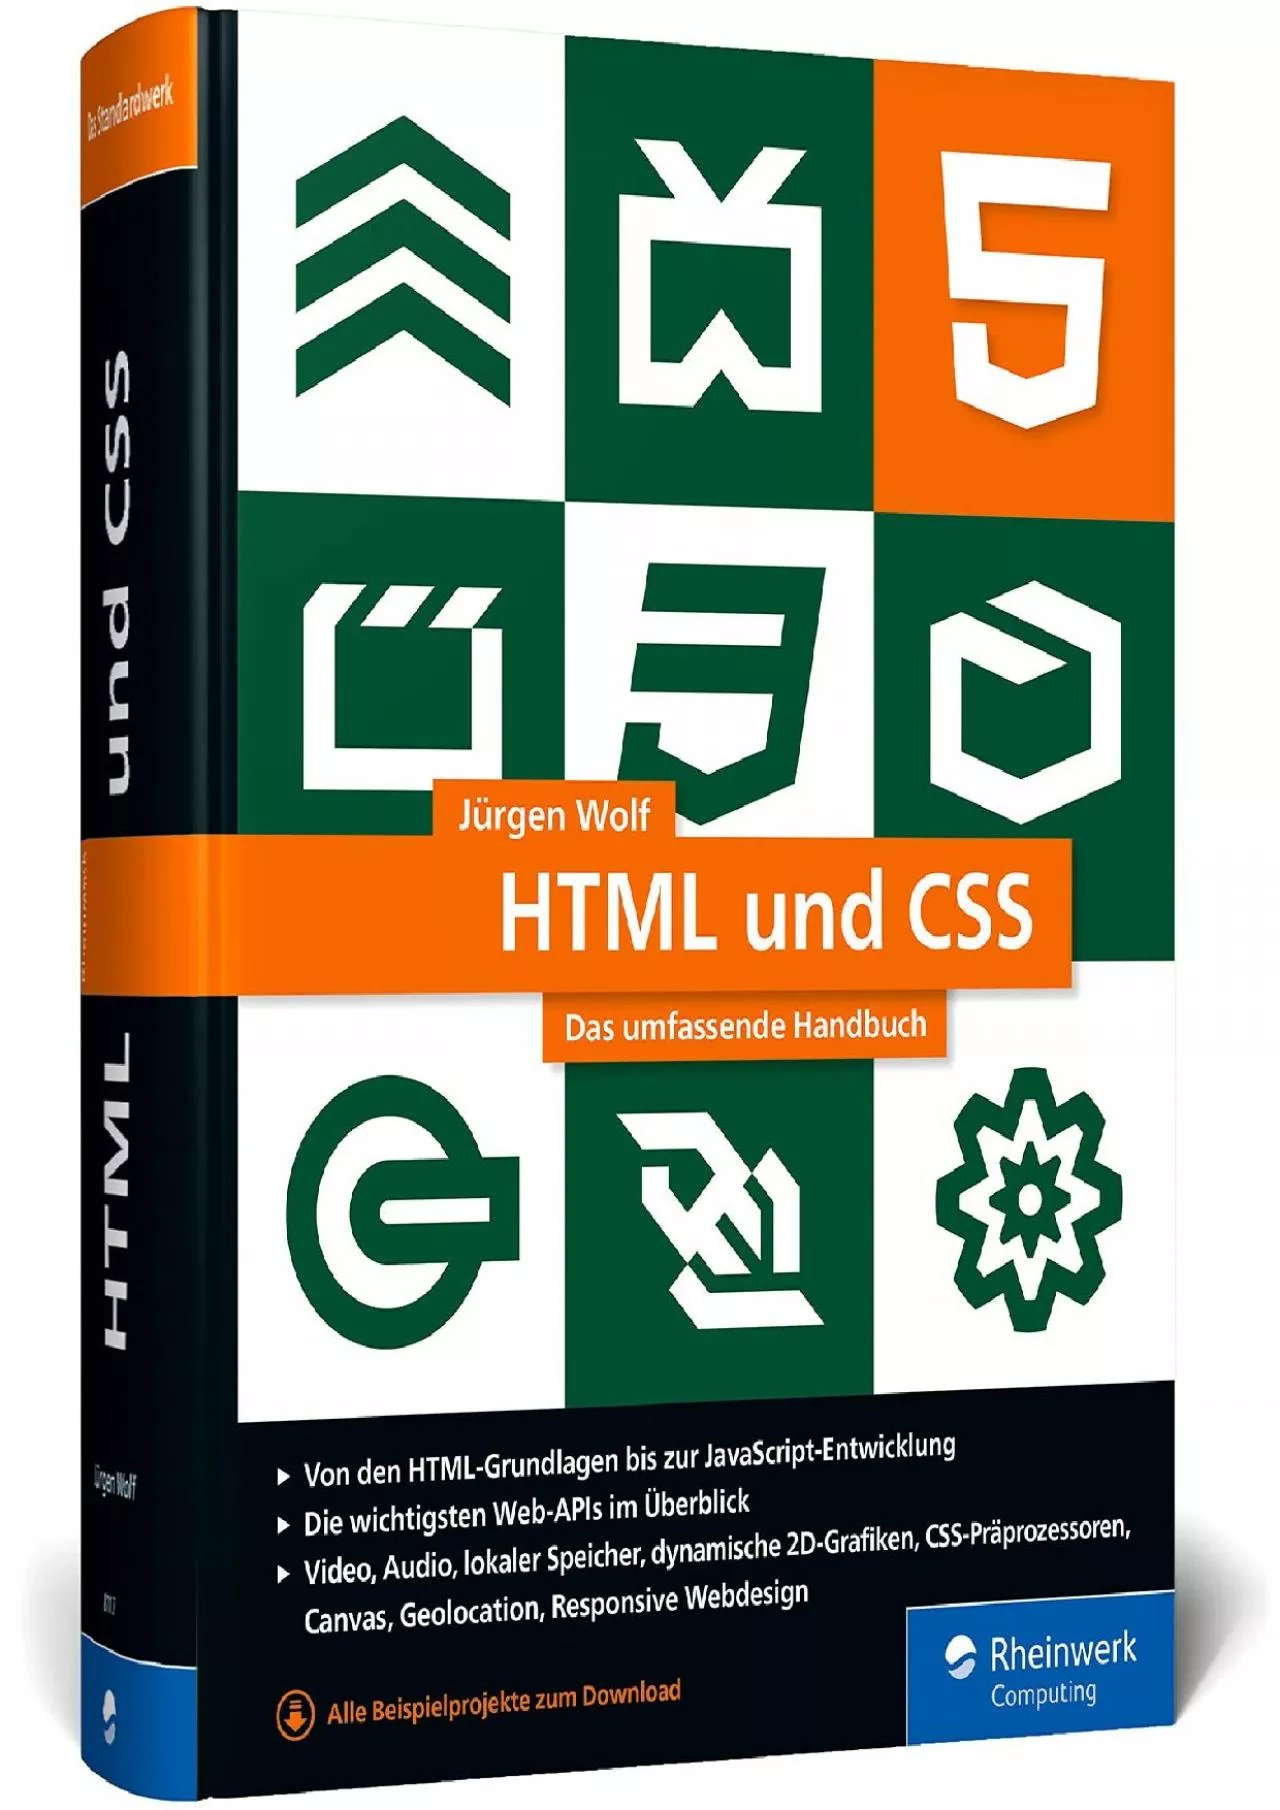 [FREE]-HTML und CSS: Das umfassende Handbuch zum Lernen und Nachschlagen. Inkl. JavaScript,